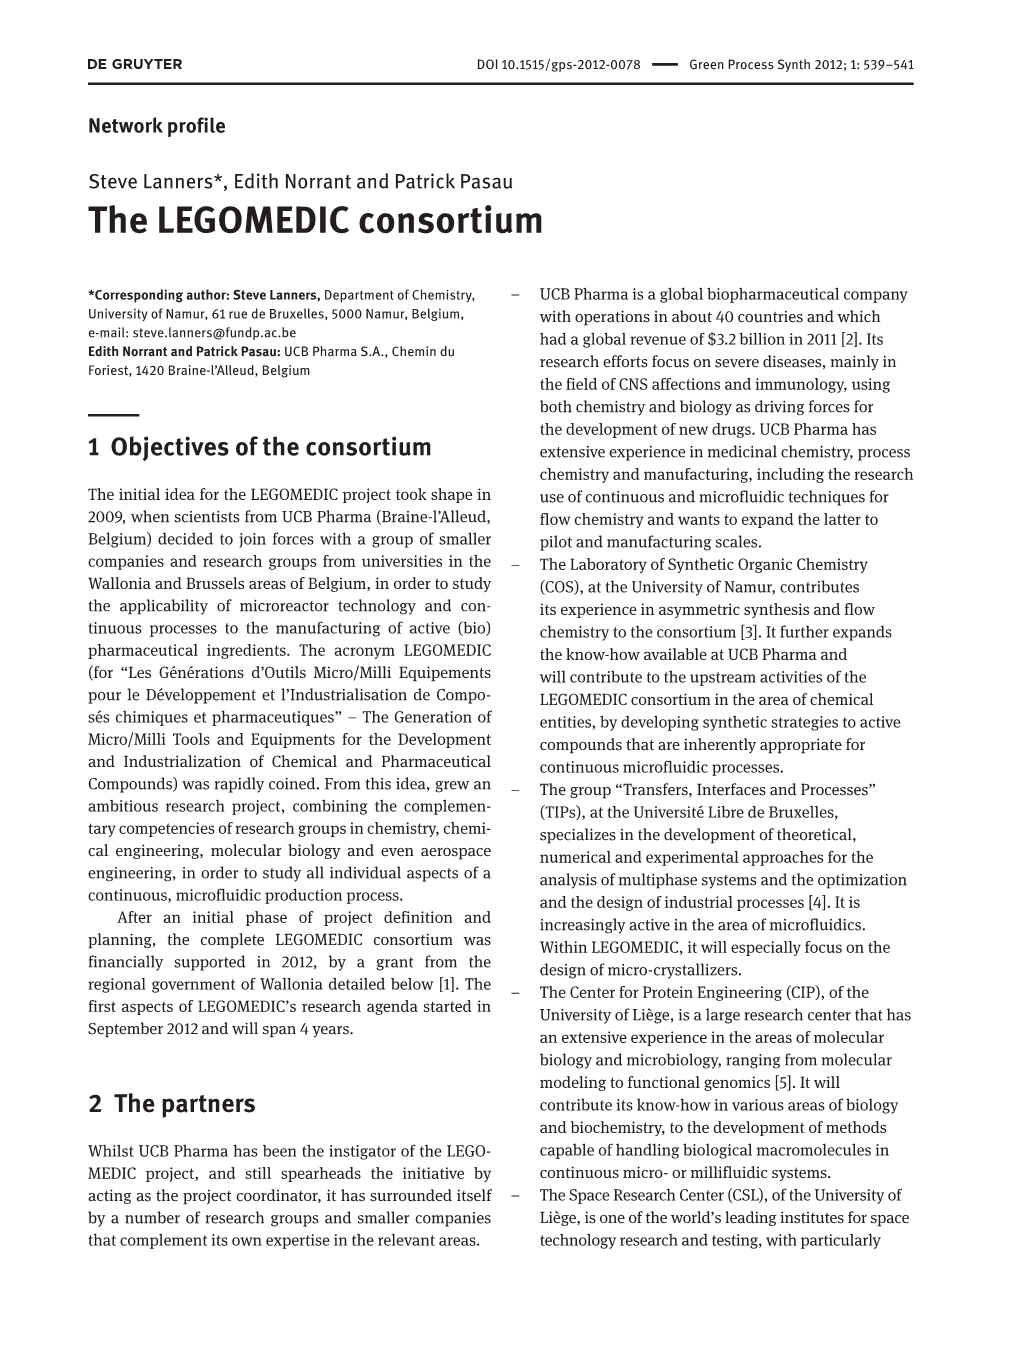 The LEGOMEDIC Consortium